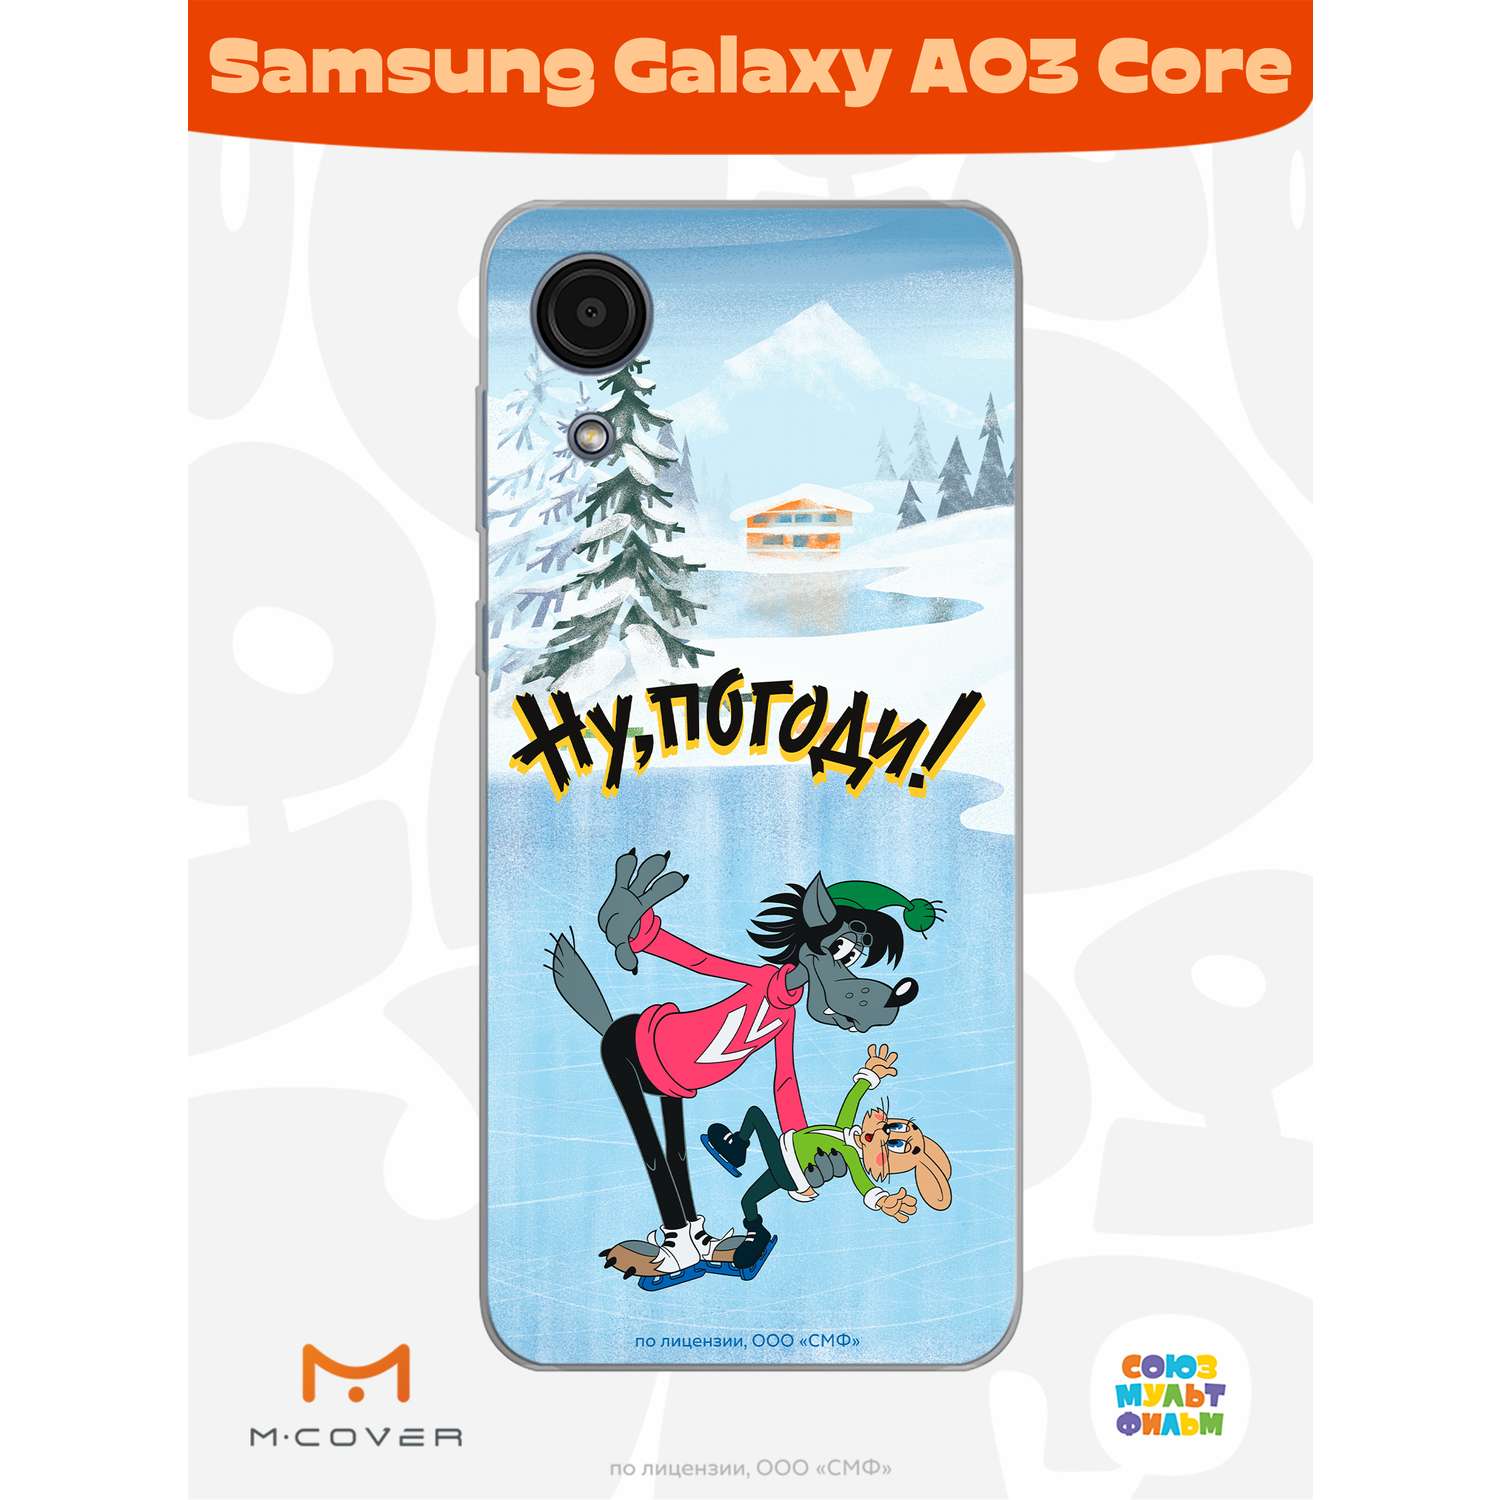 Силиконовый чехол Mcover для смартфона Samsung Galaxy A03 Core Союзмультфильм Танцы на льду - фото 3